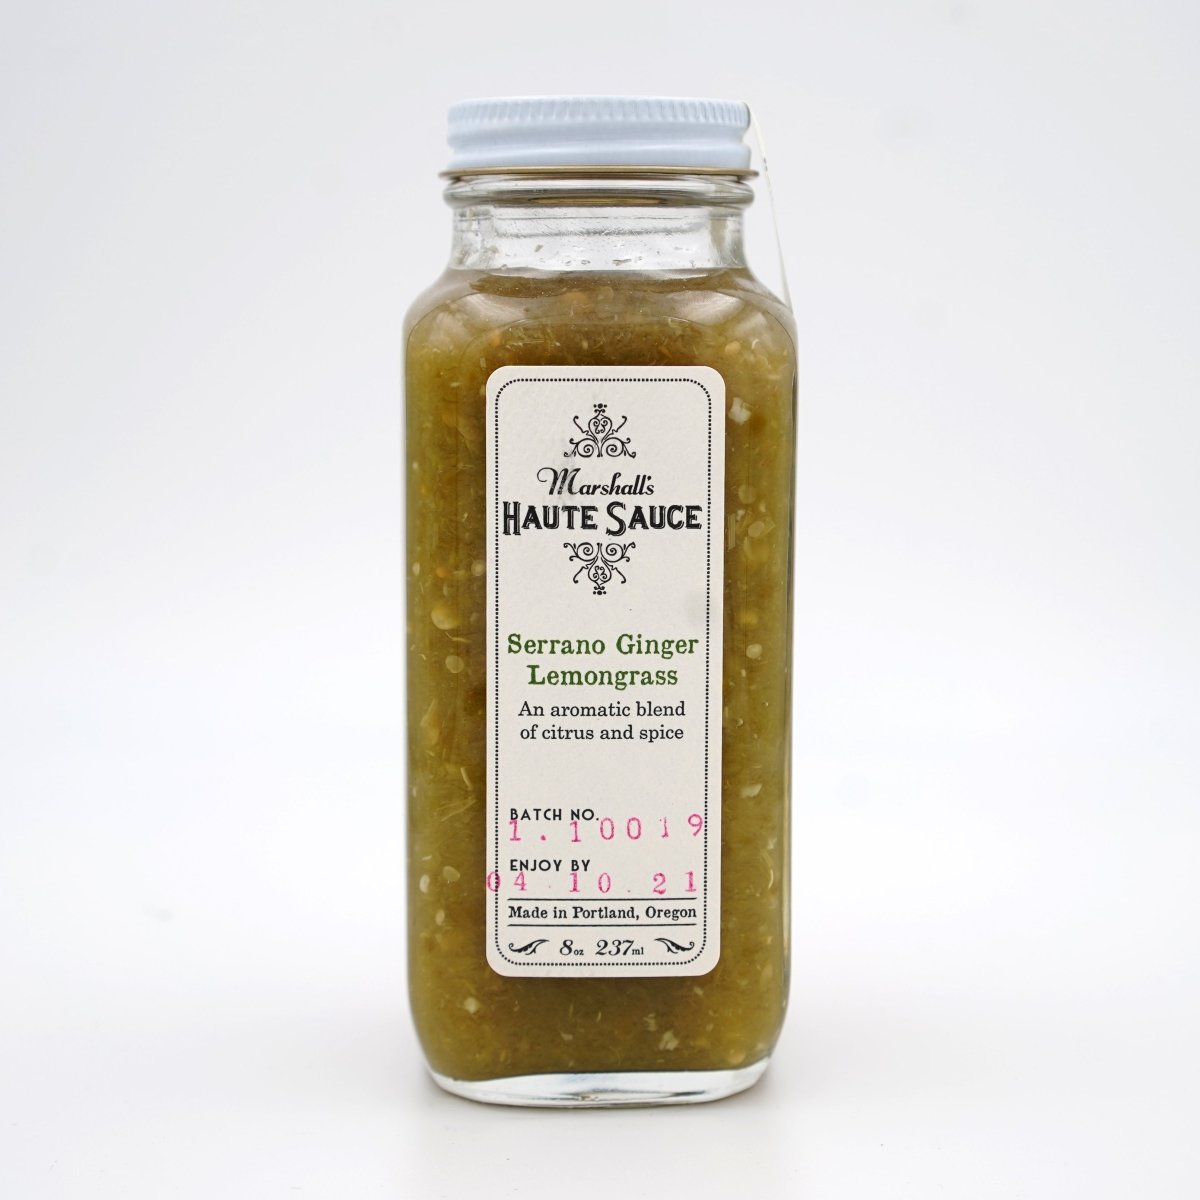 Marshall's Haute Sauce - 'Serrano Ginger Lemongrass' Hot Sauce (8OZ) - The Epicurean Trader